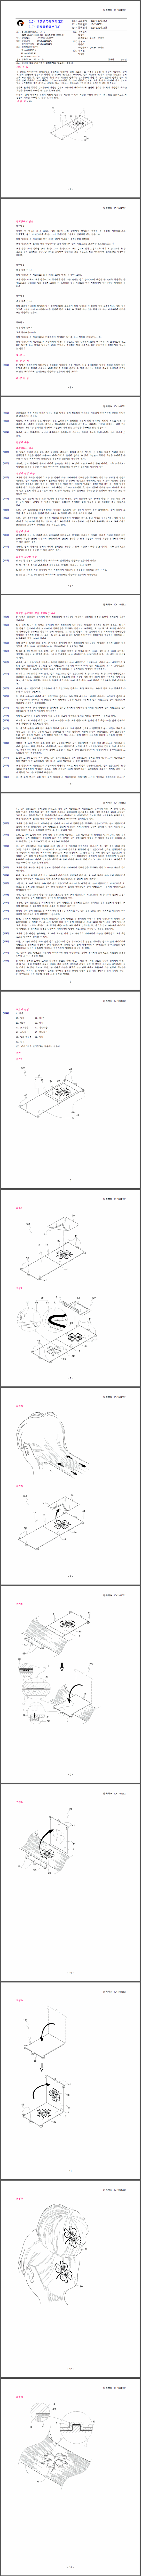 특허 제10-1364682호(머리카락에 컬러문양을 형성하는 필름지, 김성이)